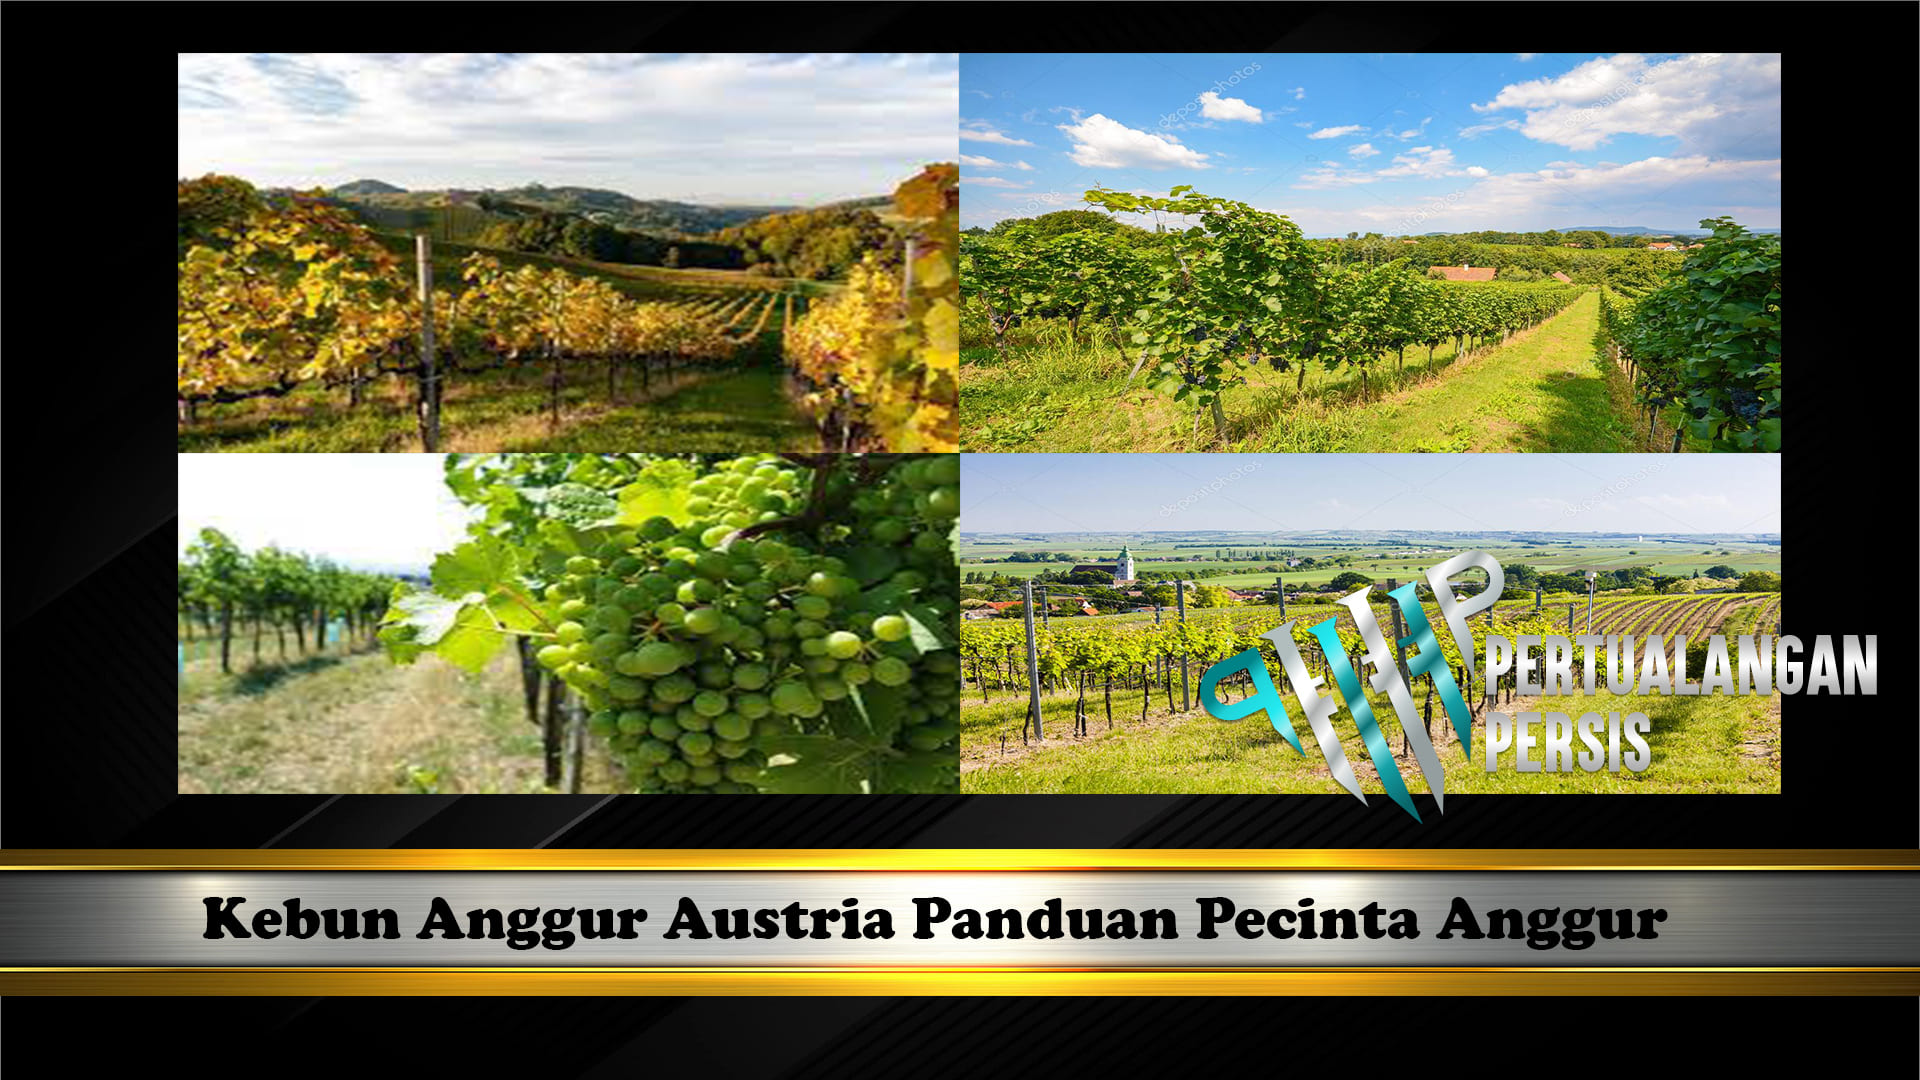 Kebun Anggur Austria Panduan Pecinta Anggur